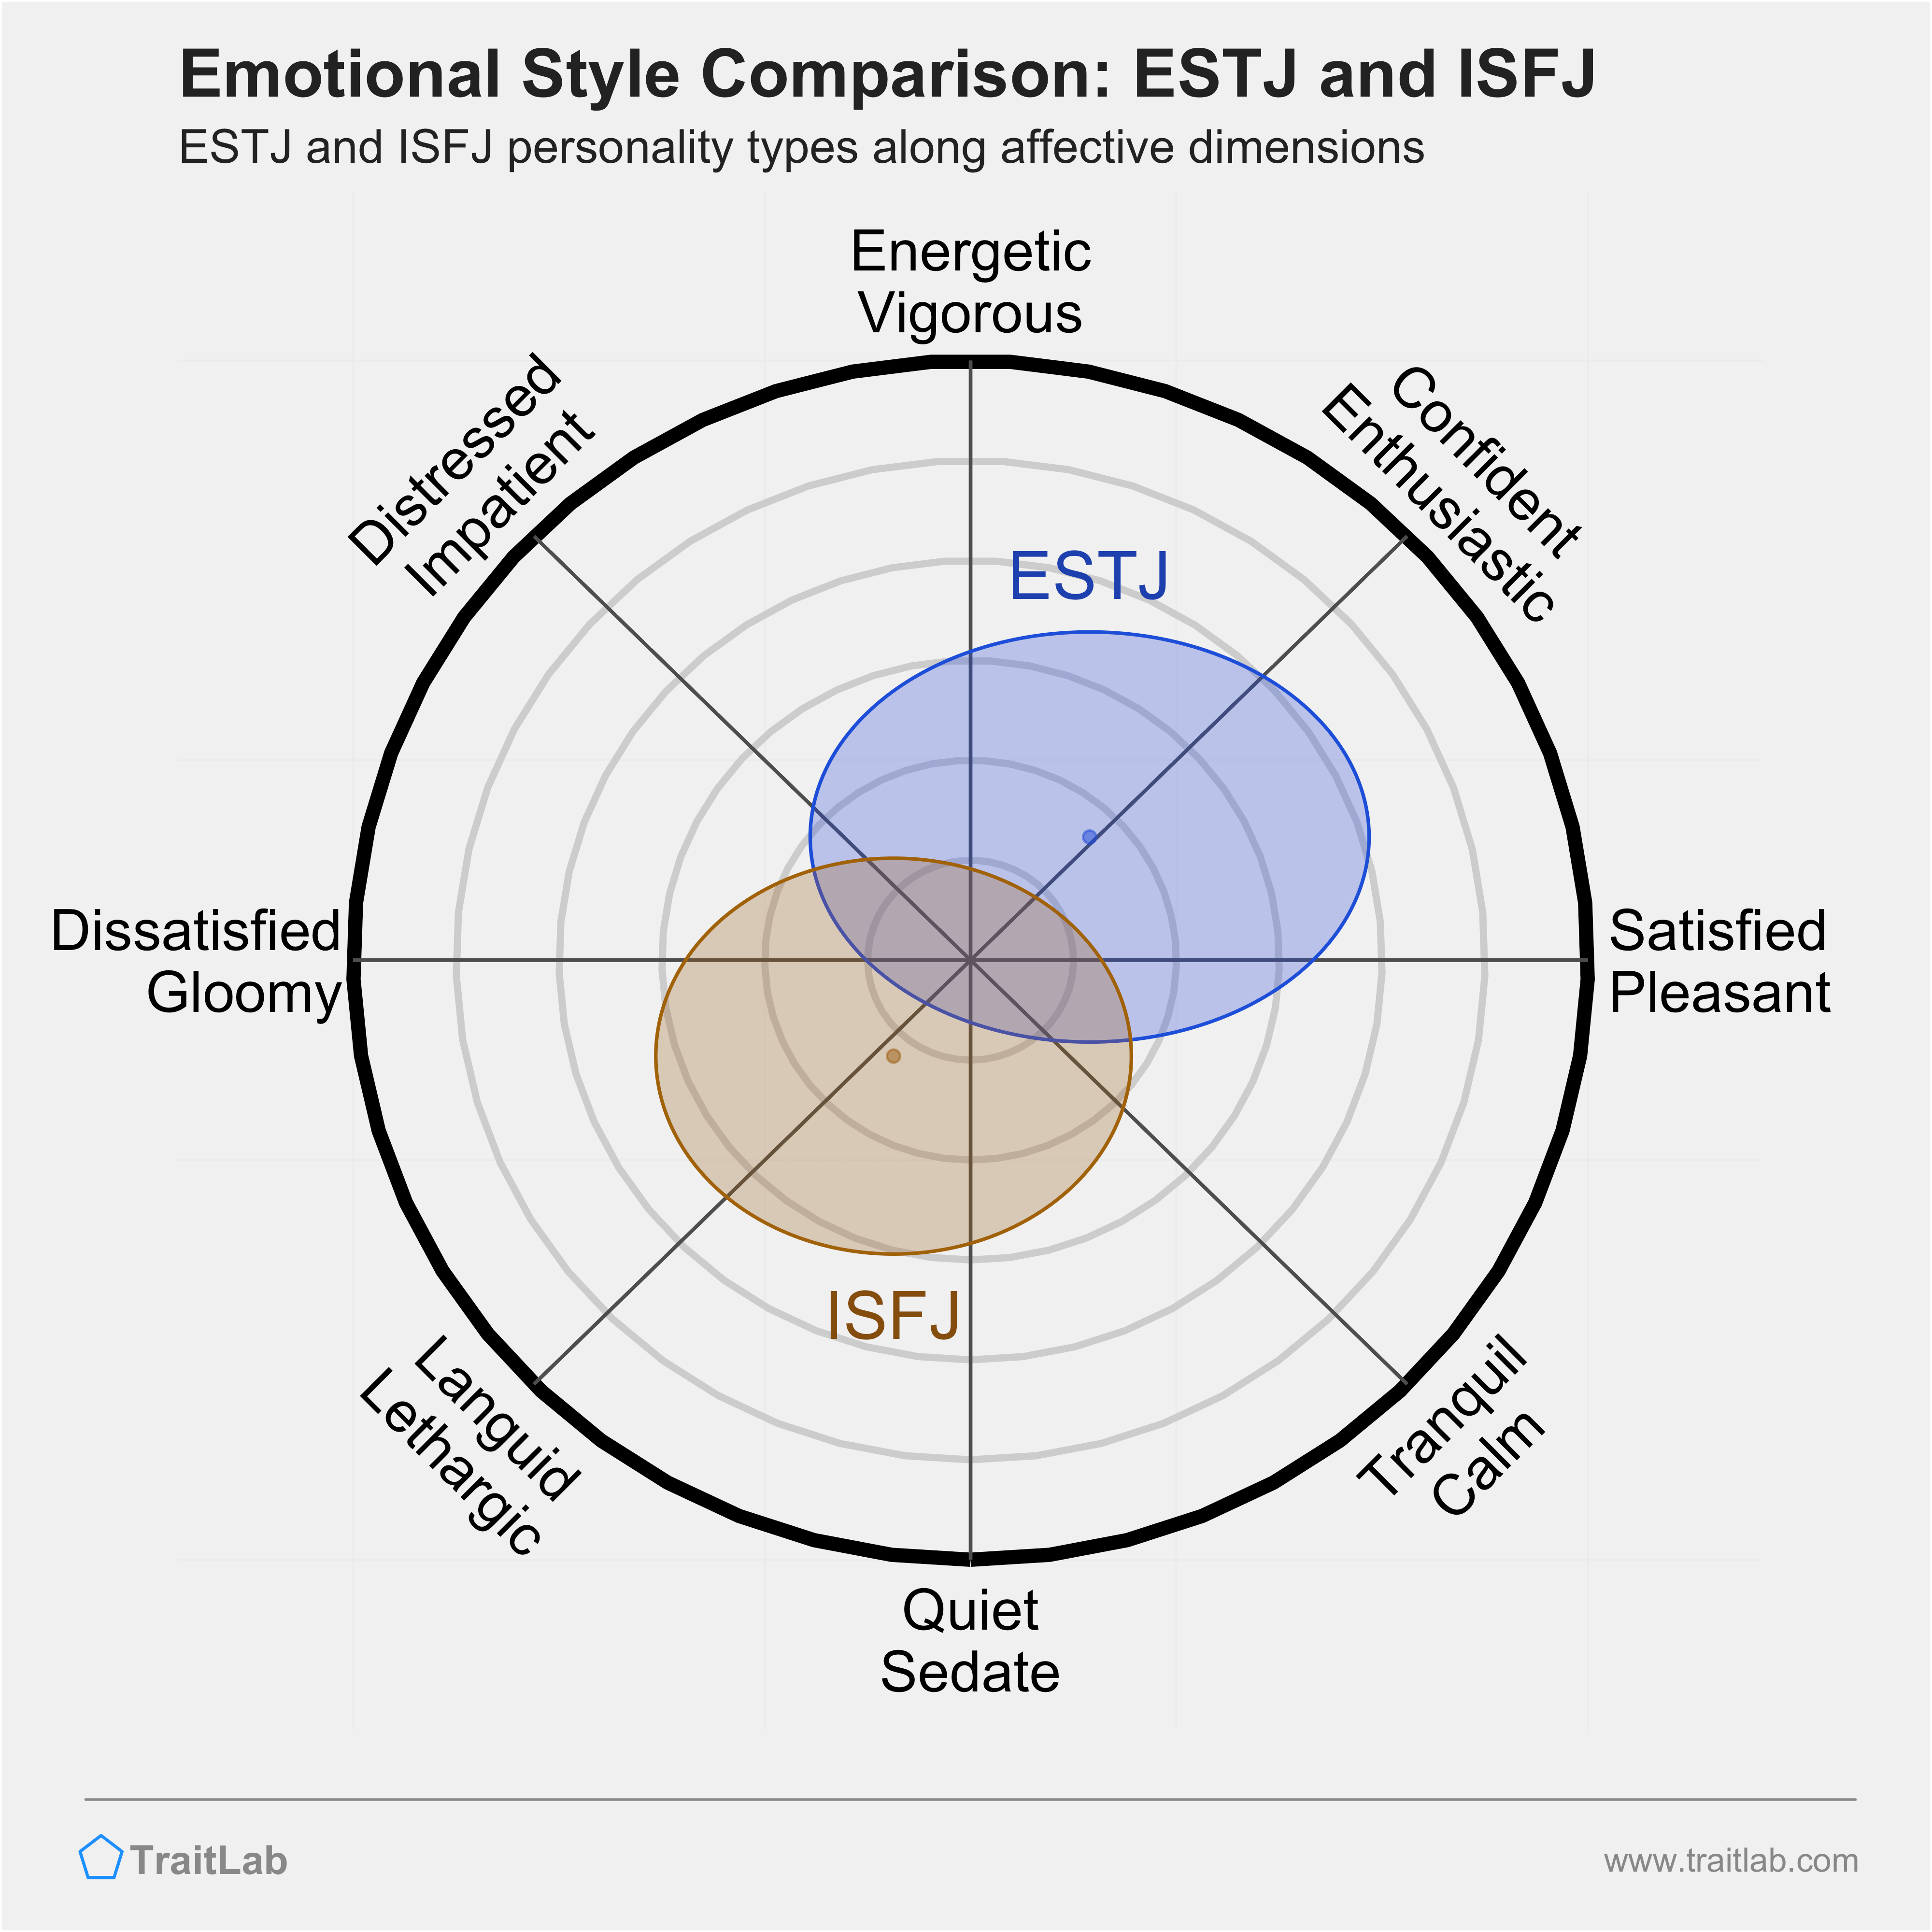 ESTJ and ISFJ comparison across emotional (affective) dimensions